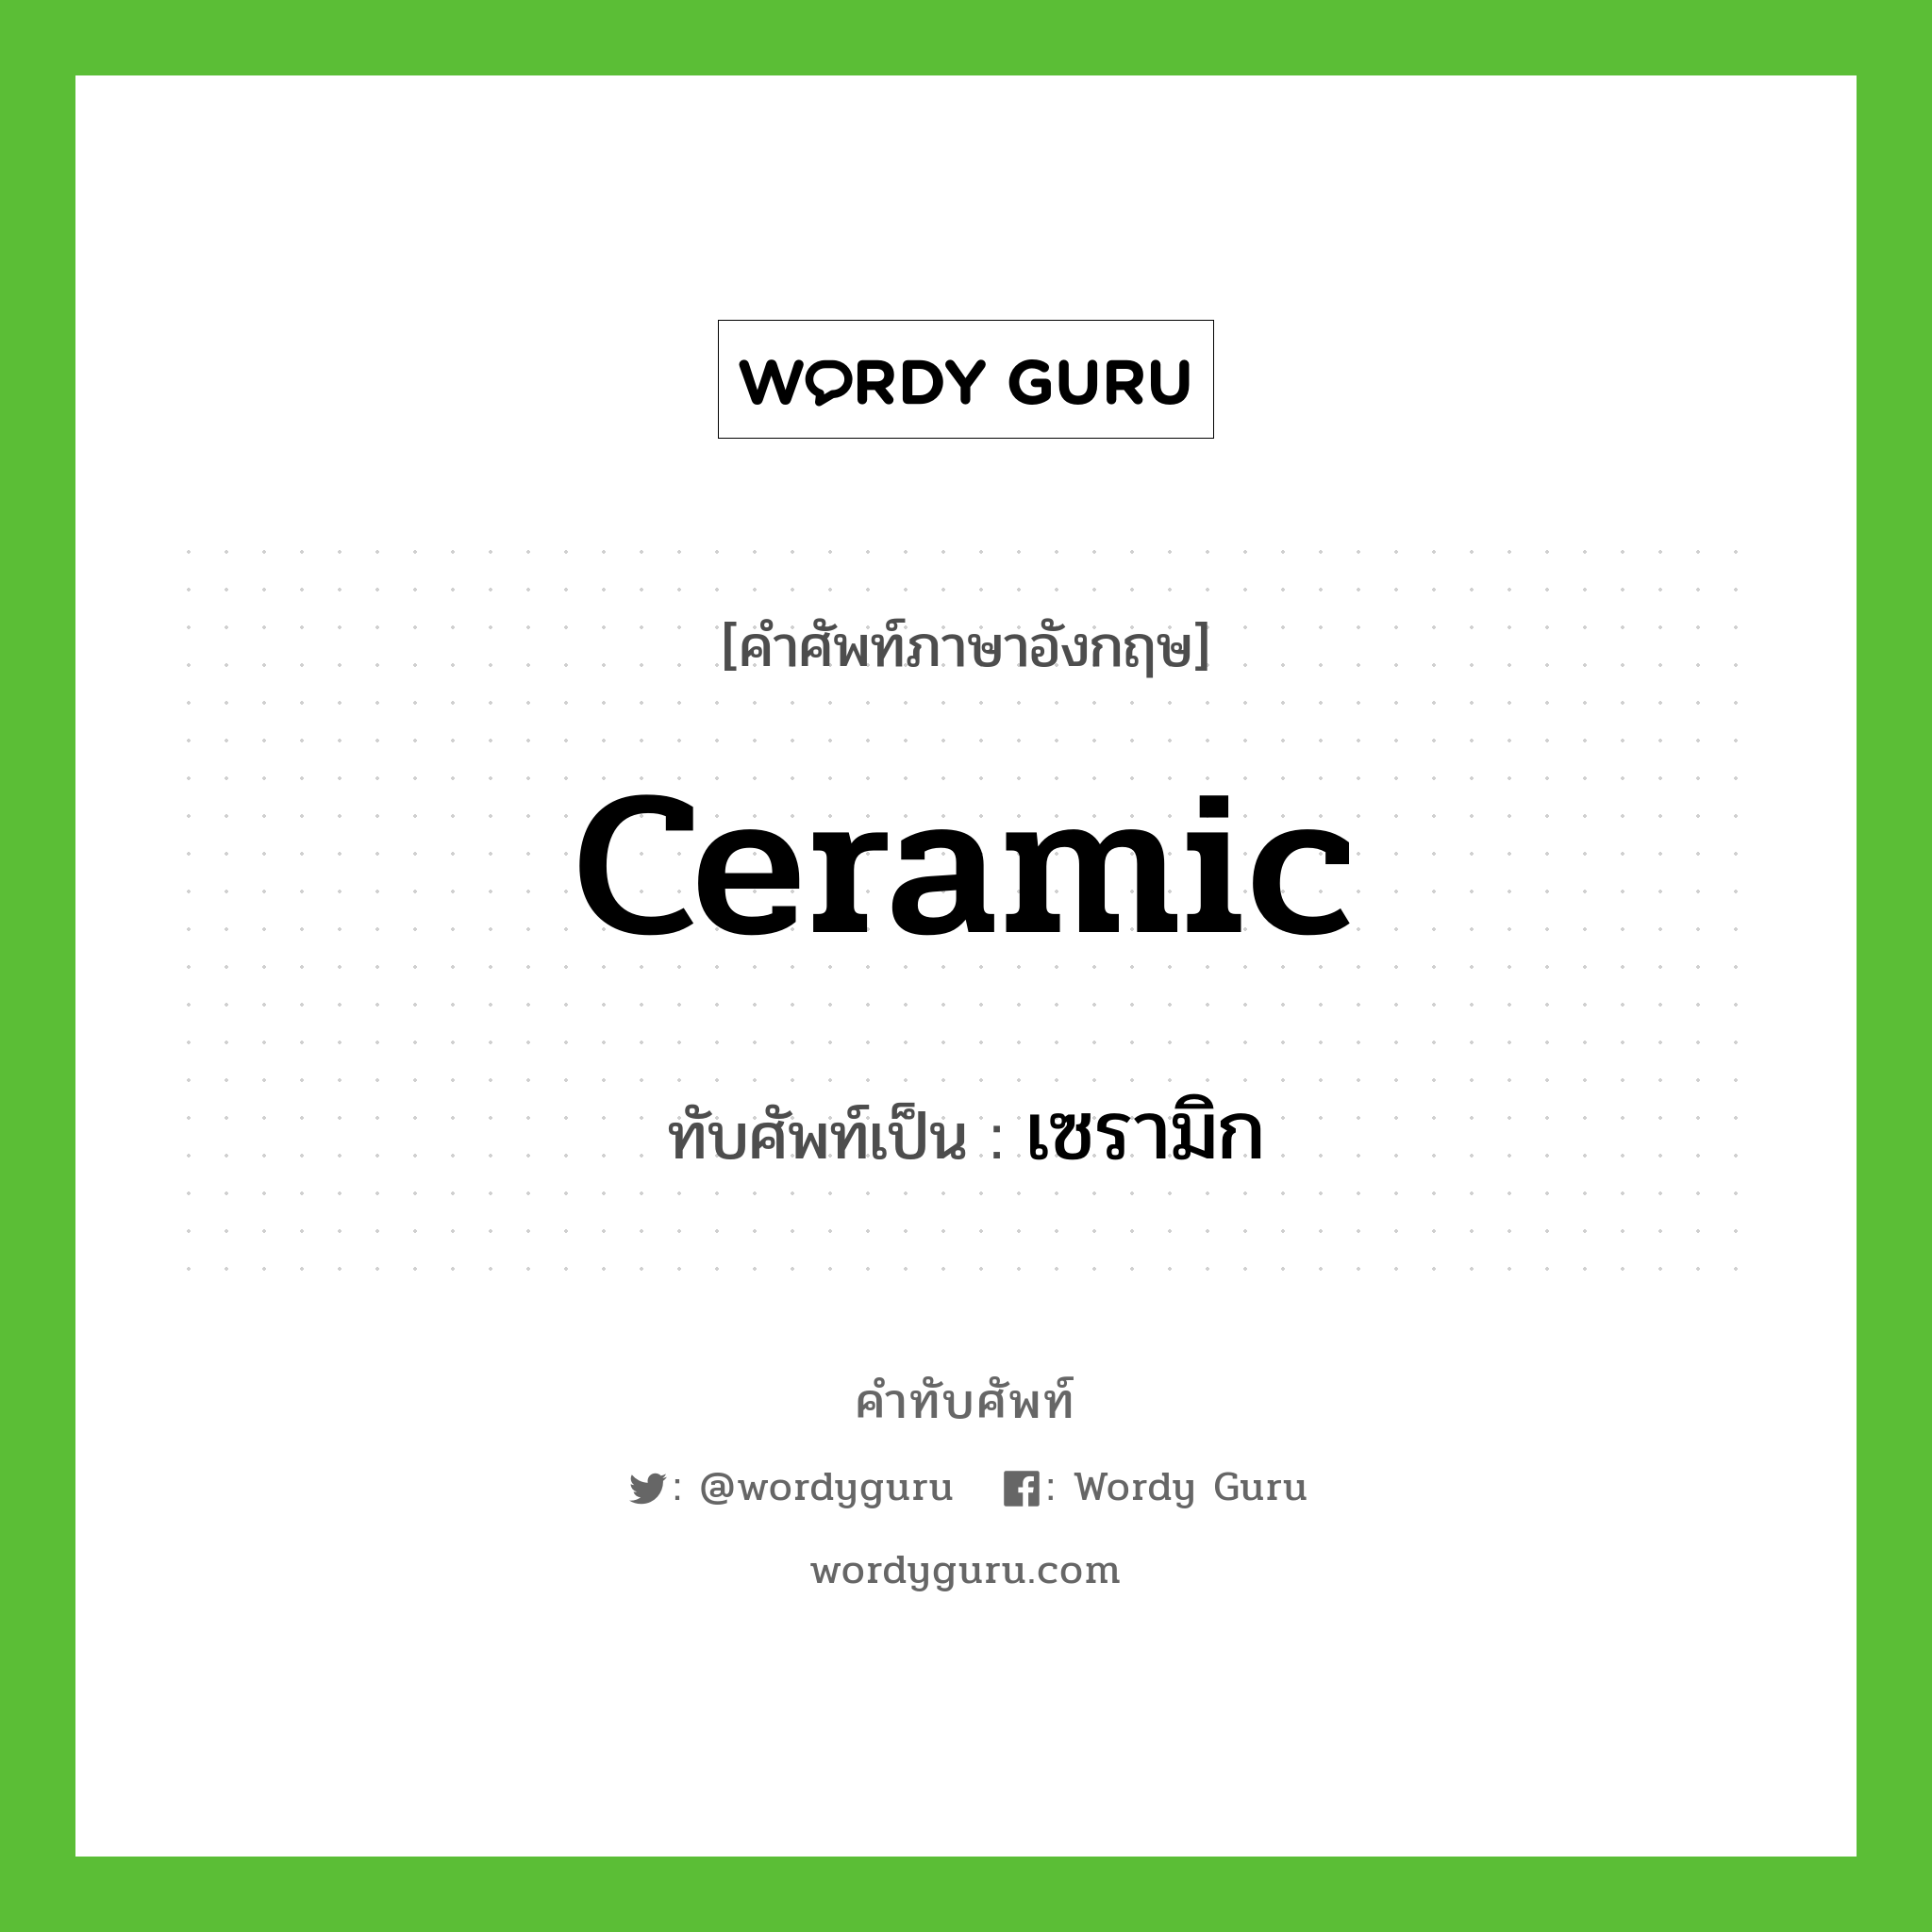 ceramic เขียนเป็นคำไทยว่าอะไร?, คำศัพท์ภาษาอังกฤษ ceramic ทับศัพท์เป็น เซรามิก